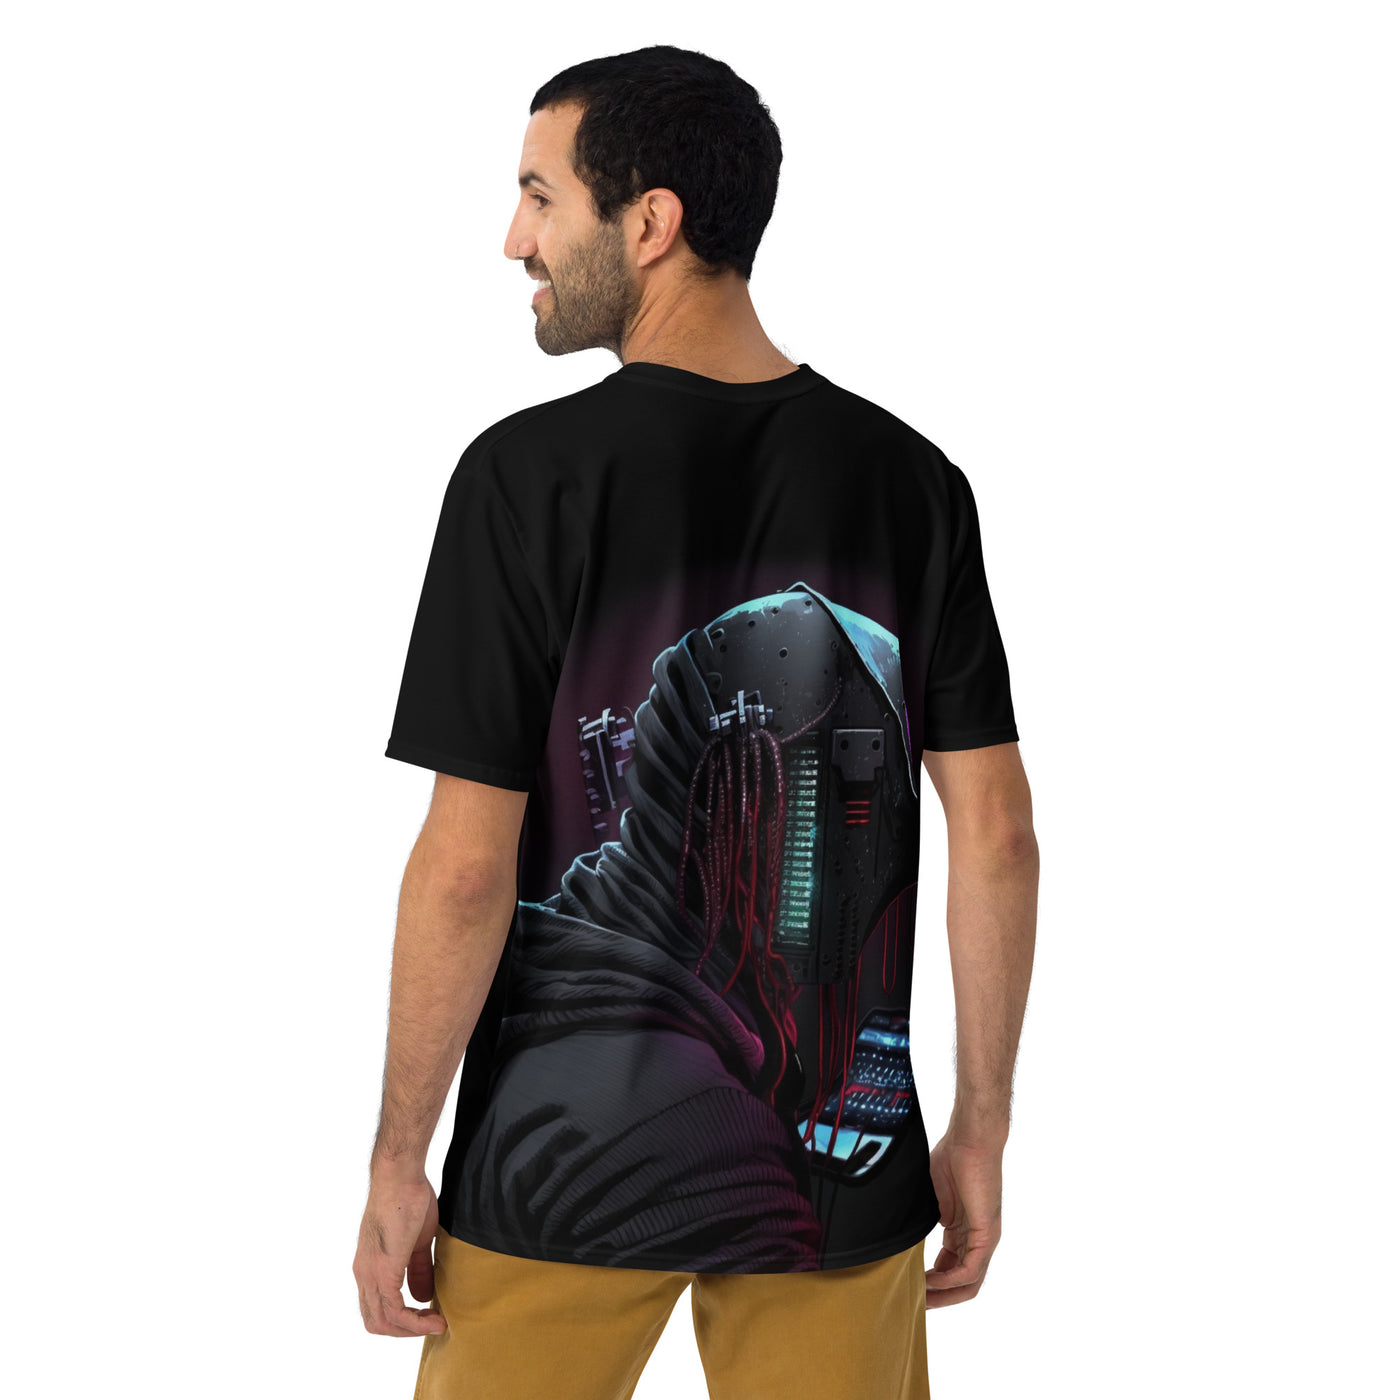 Cyberware assassin v4 - Men's t-shirt (back print)